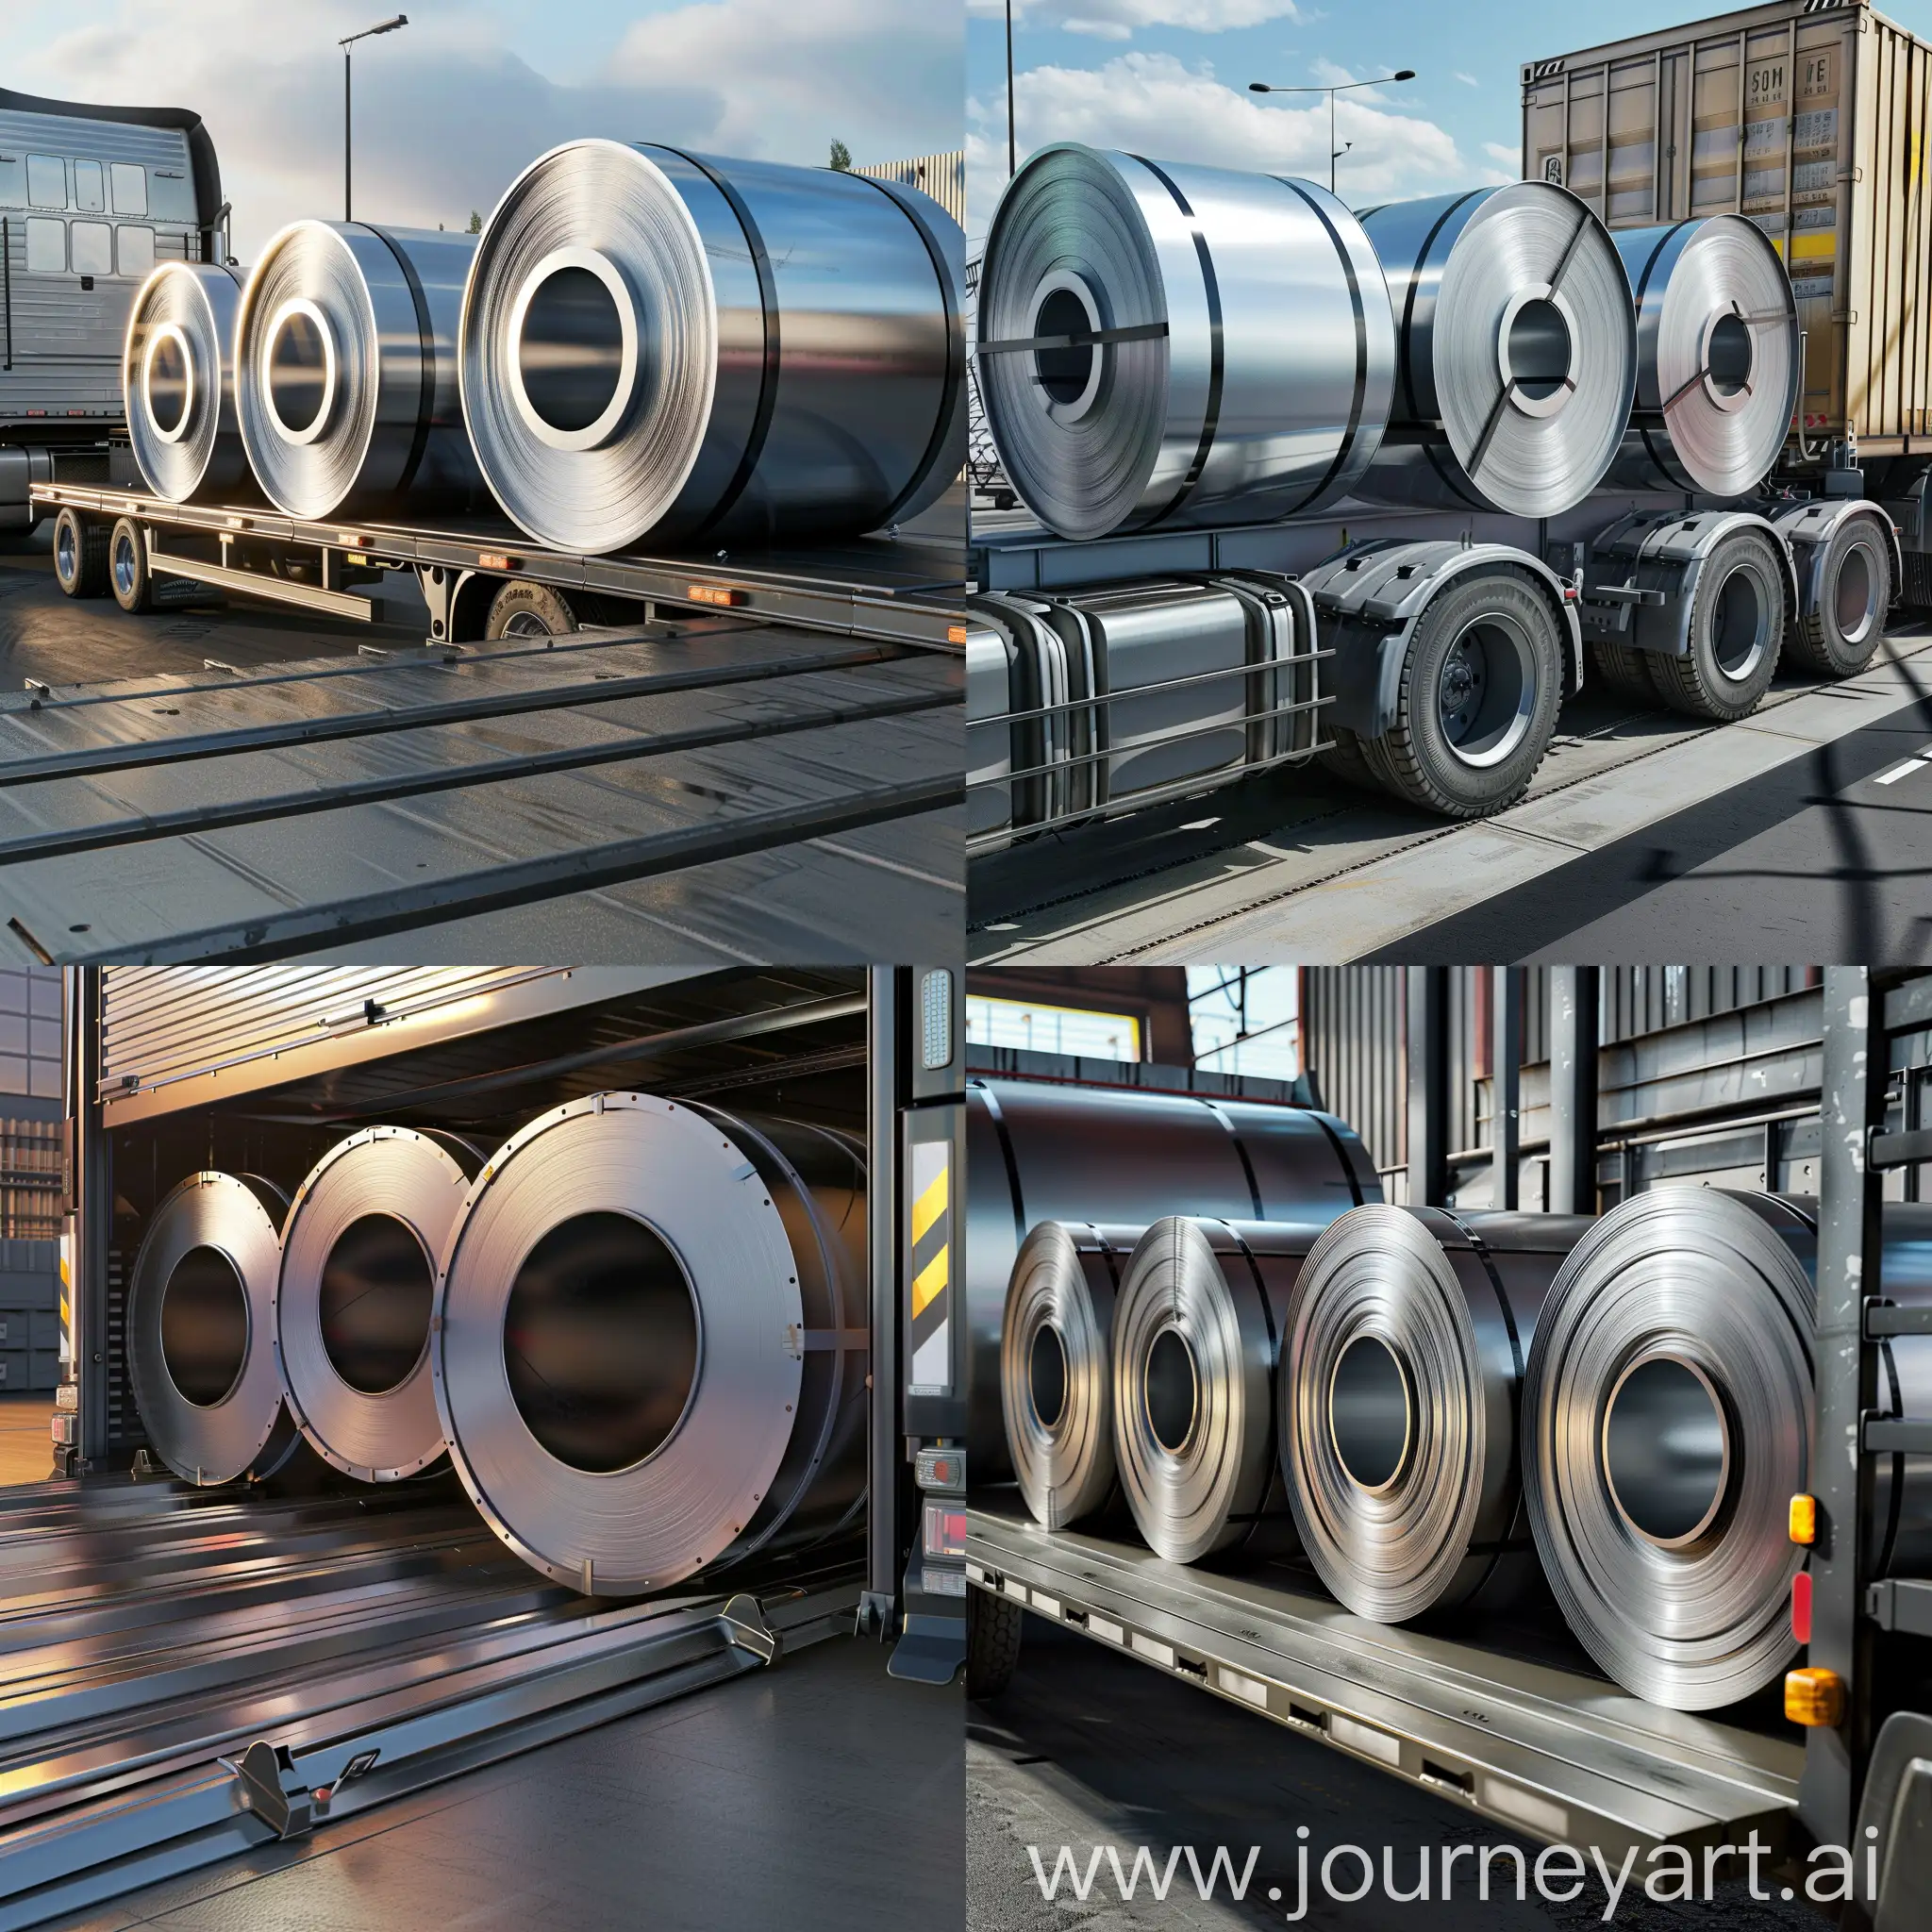 Steel-Rolls-Loading-onto-Truck-Industrial-Transportation-Scene